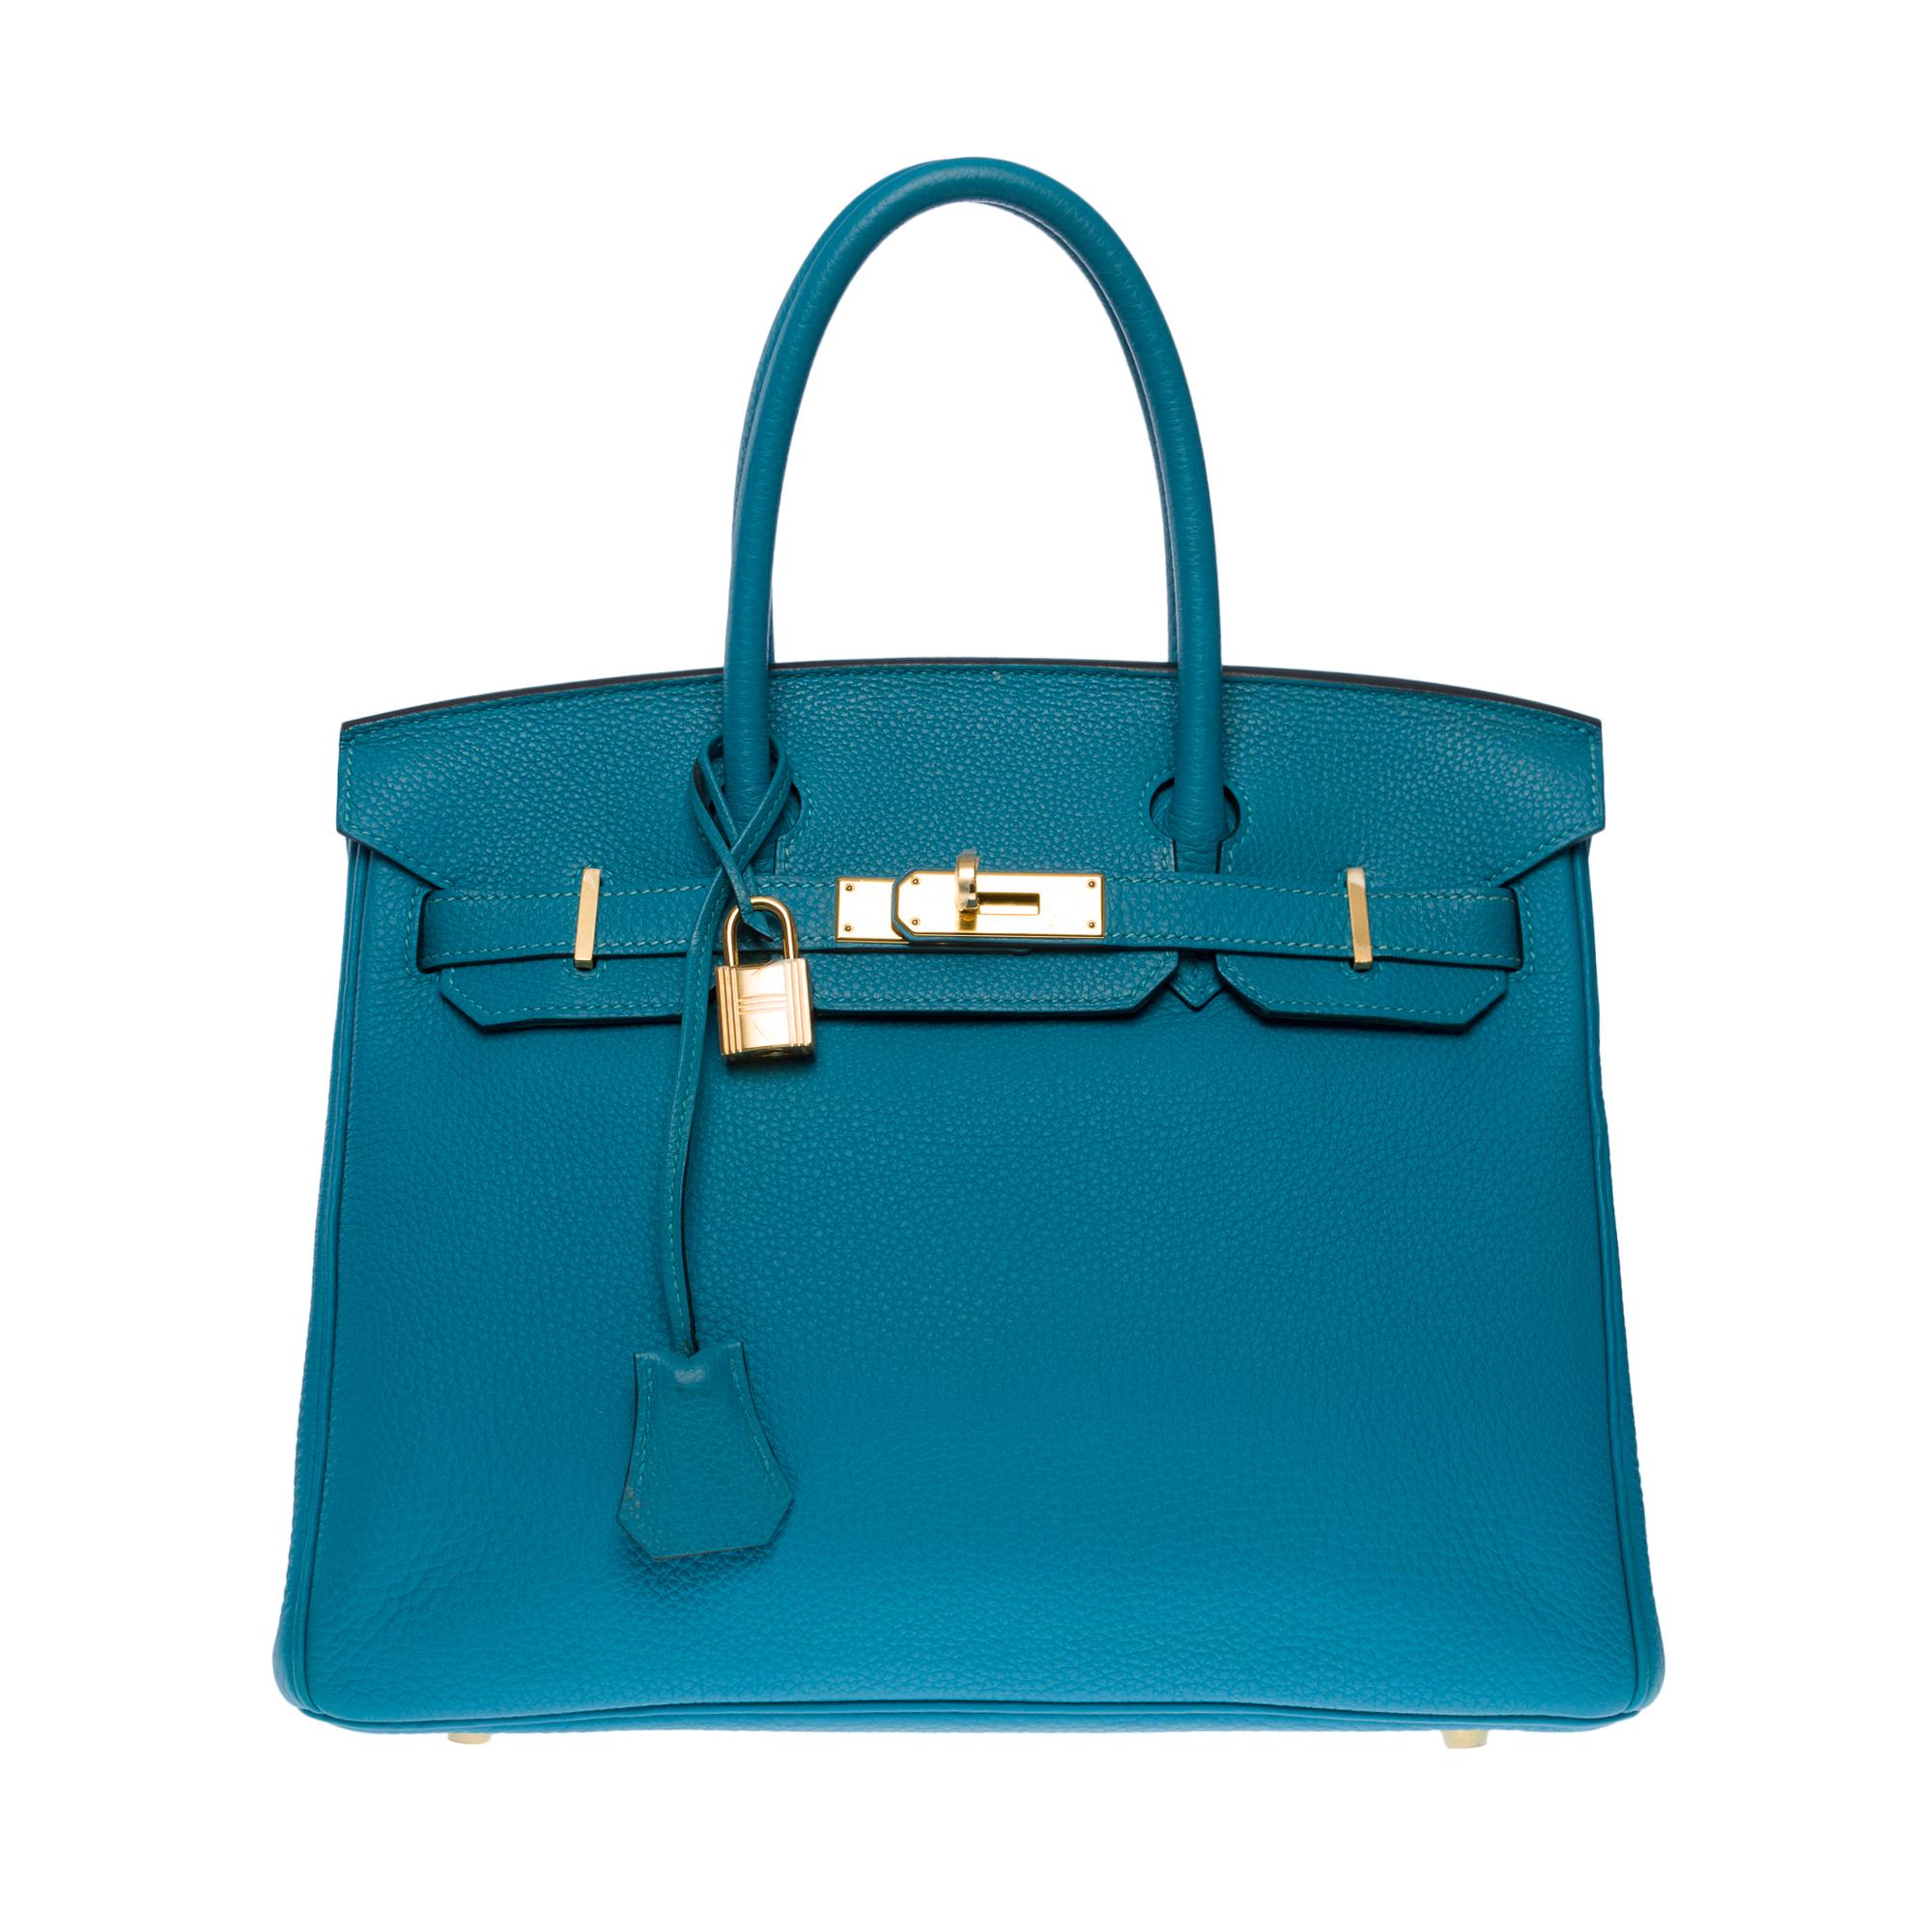 Außergewöhnliche & seltene Hermes Birkin 30 Handtasche aus türkisfarbenem Togo-Leder, vergoldete Metallbeschläge, doppelter blauer Ledergriff, der ein Tragen von Hand ermöglicht

Klappenverschluss
Innenfutter aus blauem Leder, eine